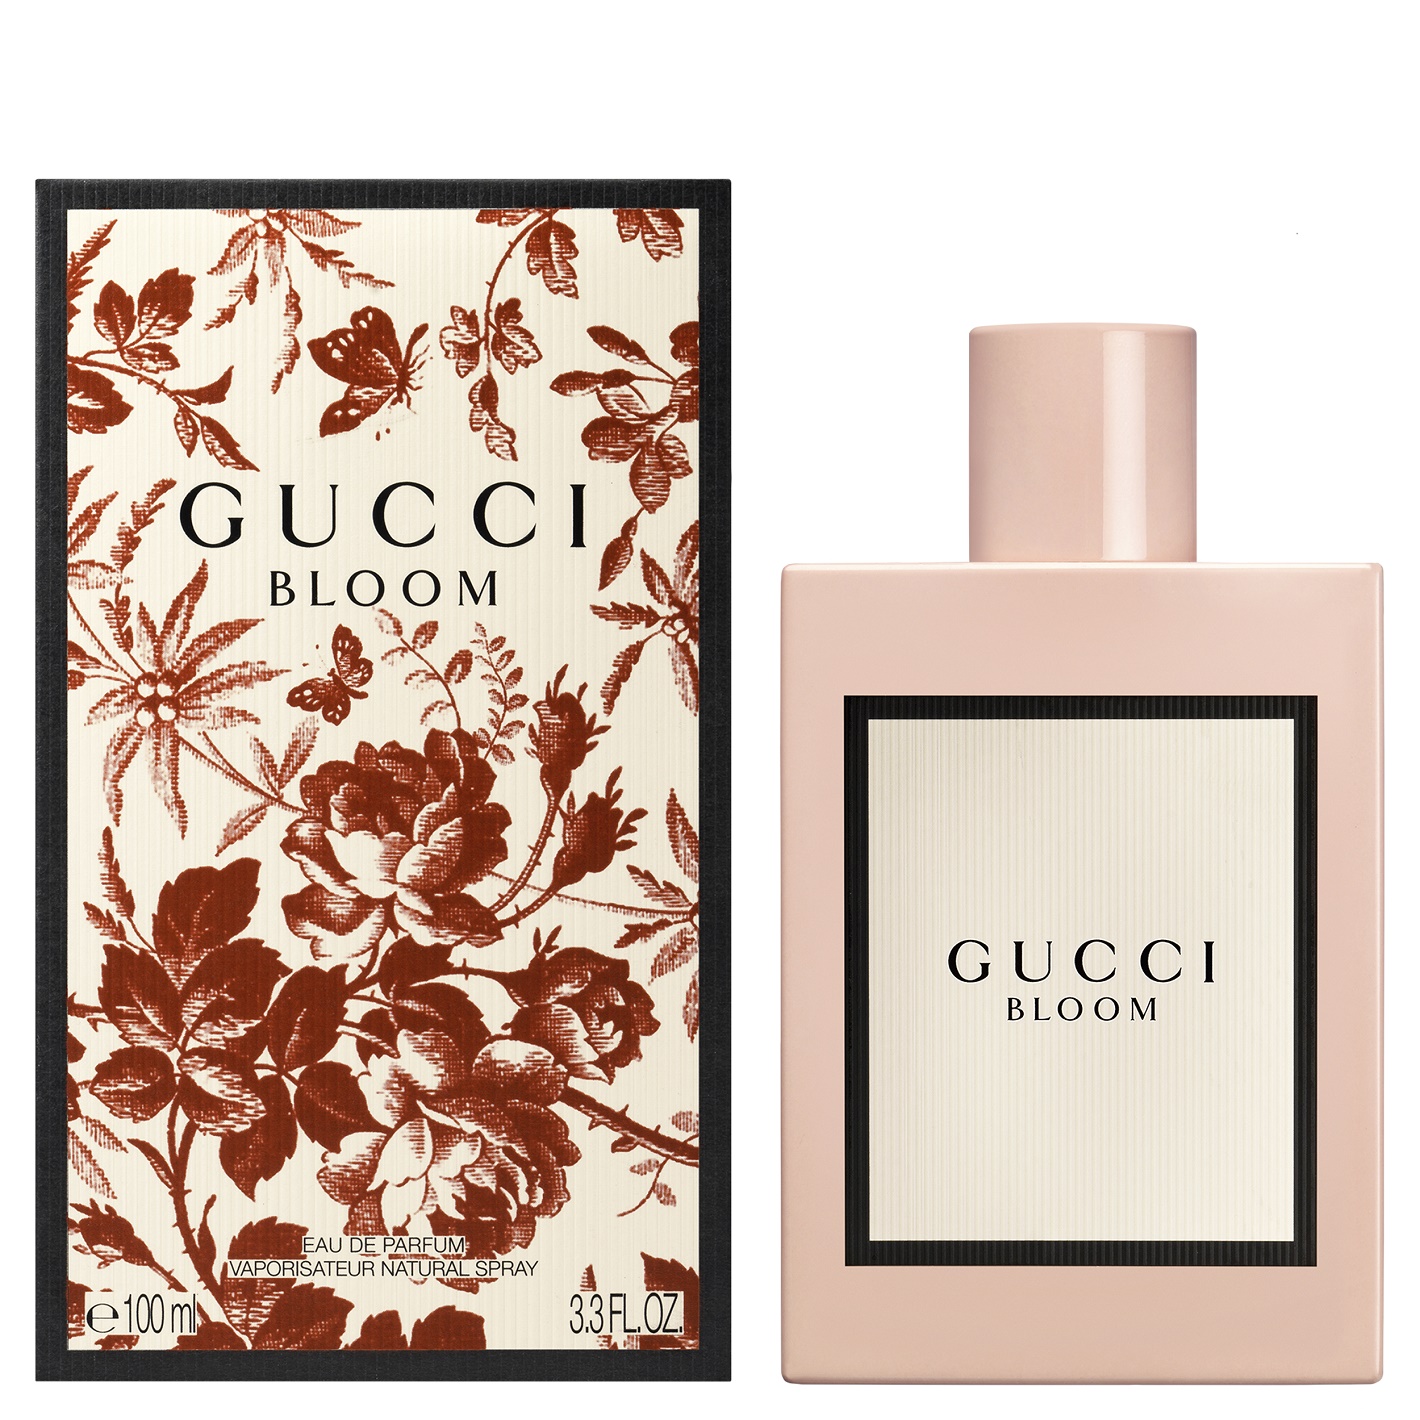 Gucci Bloom: zapach, od którego można się uzależnić!